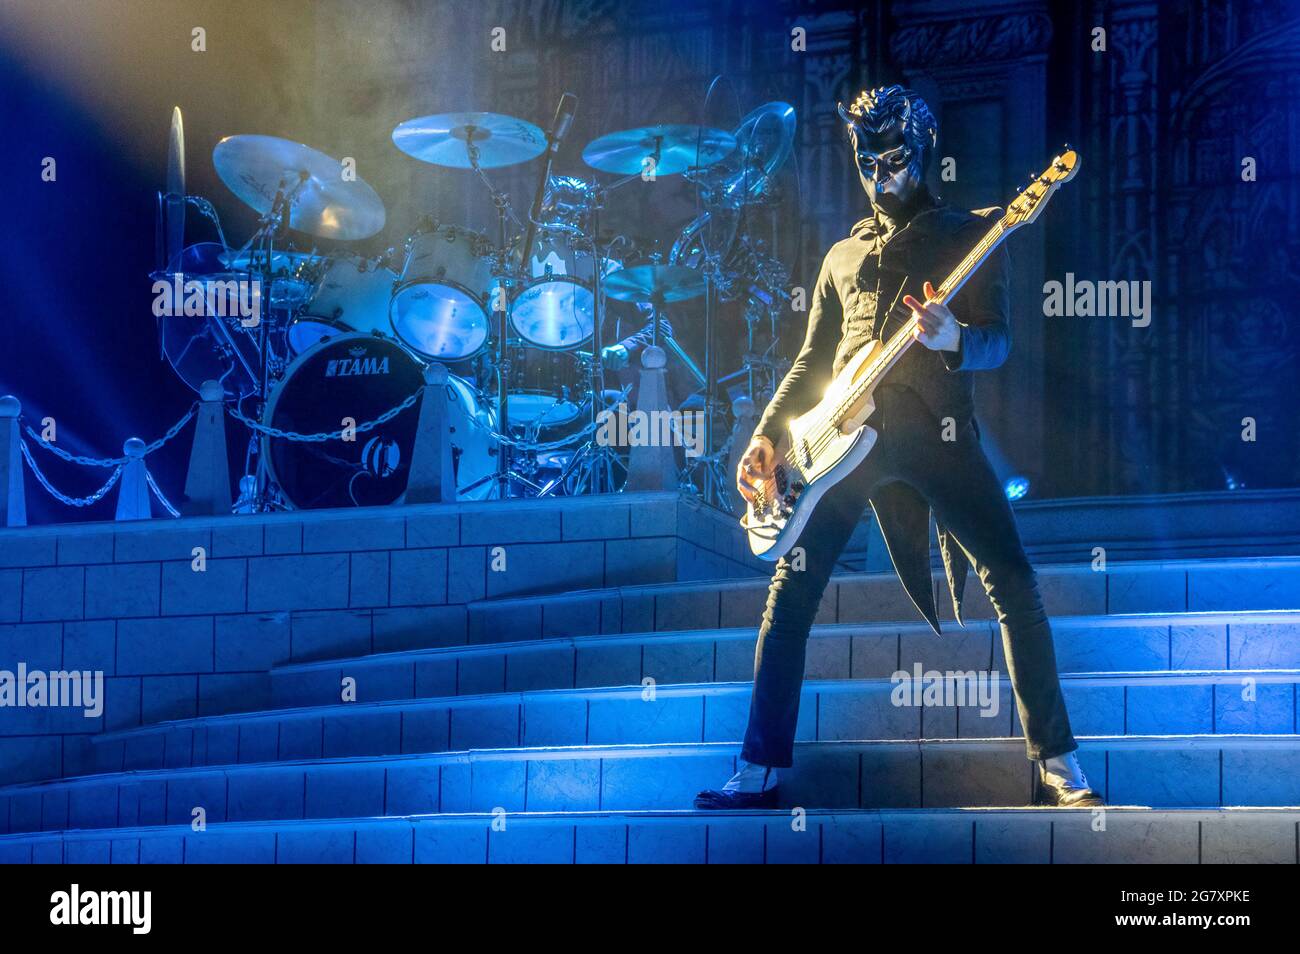 Ghost, conosciuto anche come Ghost B.C., gioca dal vivo a Londra presso la SSE Arena di Wembley. Foto Stock